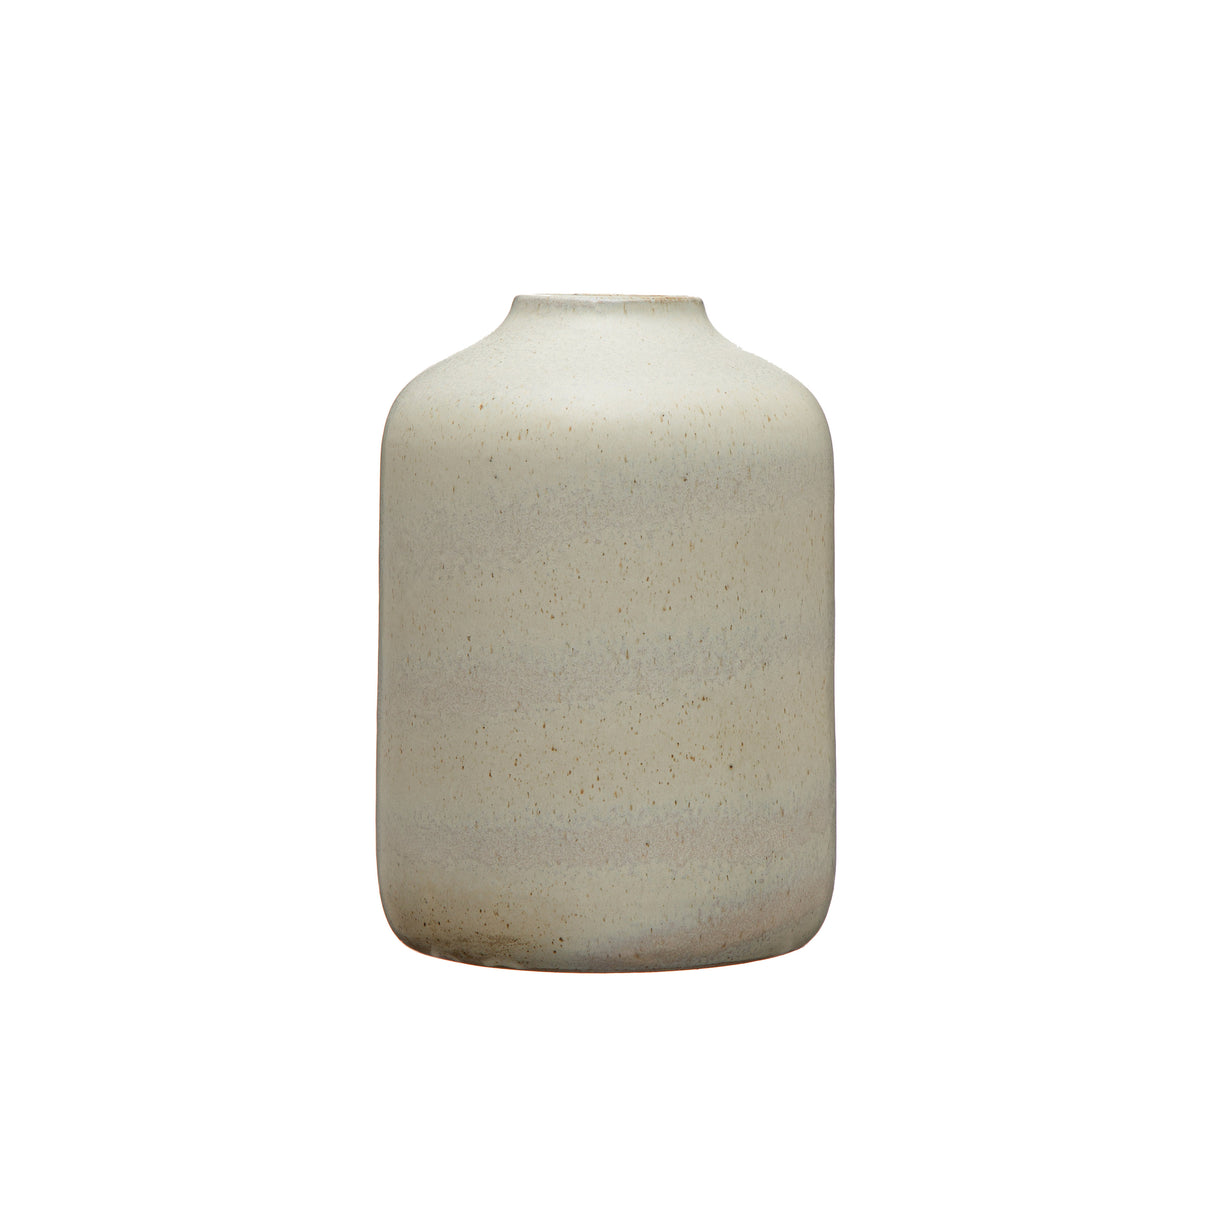 Marbled Beige Stoneware Vase